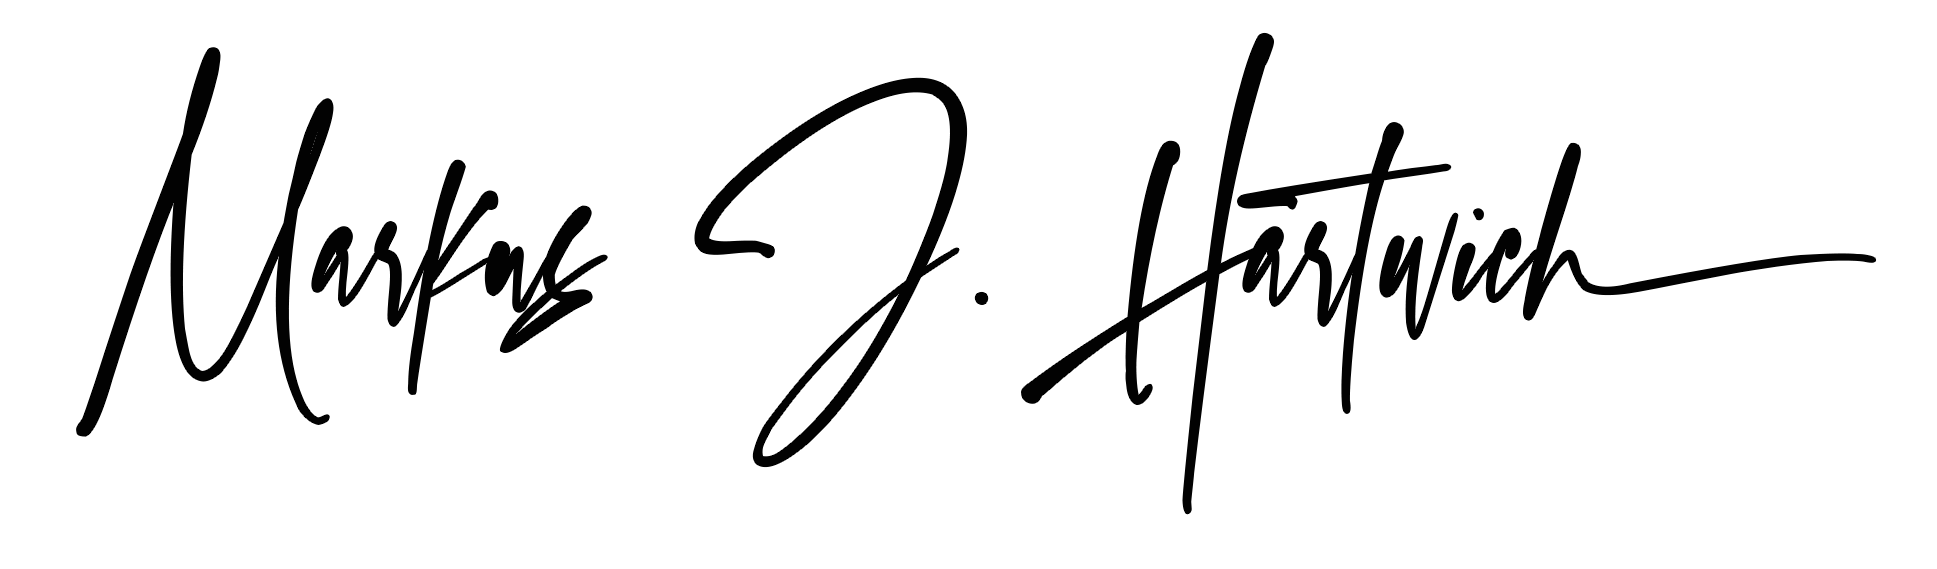 Signature black transparent